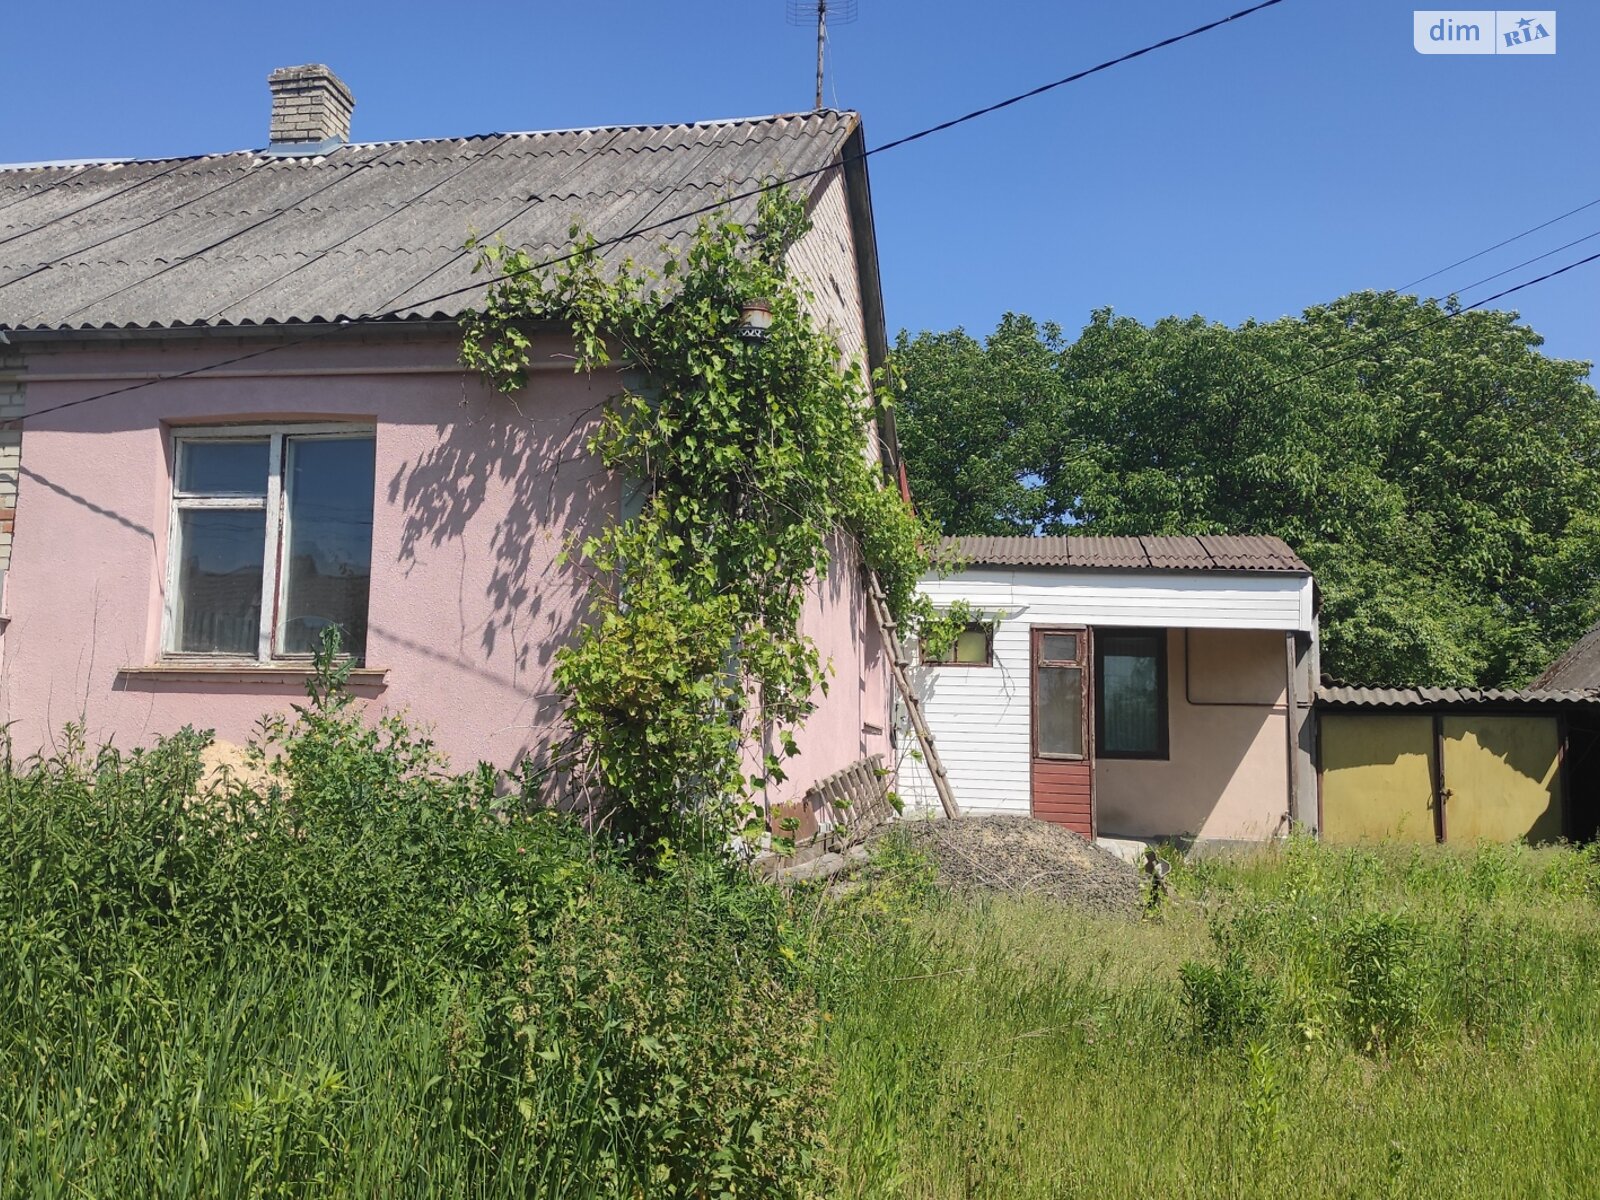 Продажа части дома в Липинах, улица Первомайская, 3 комнаты фото 1